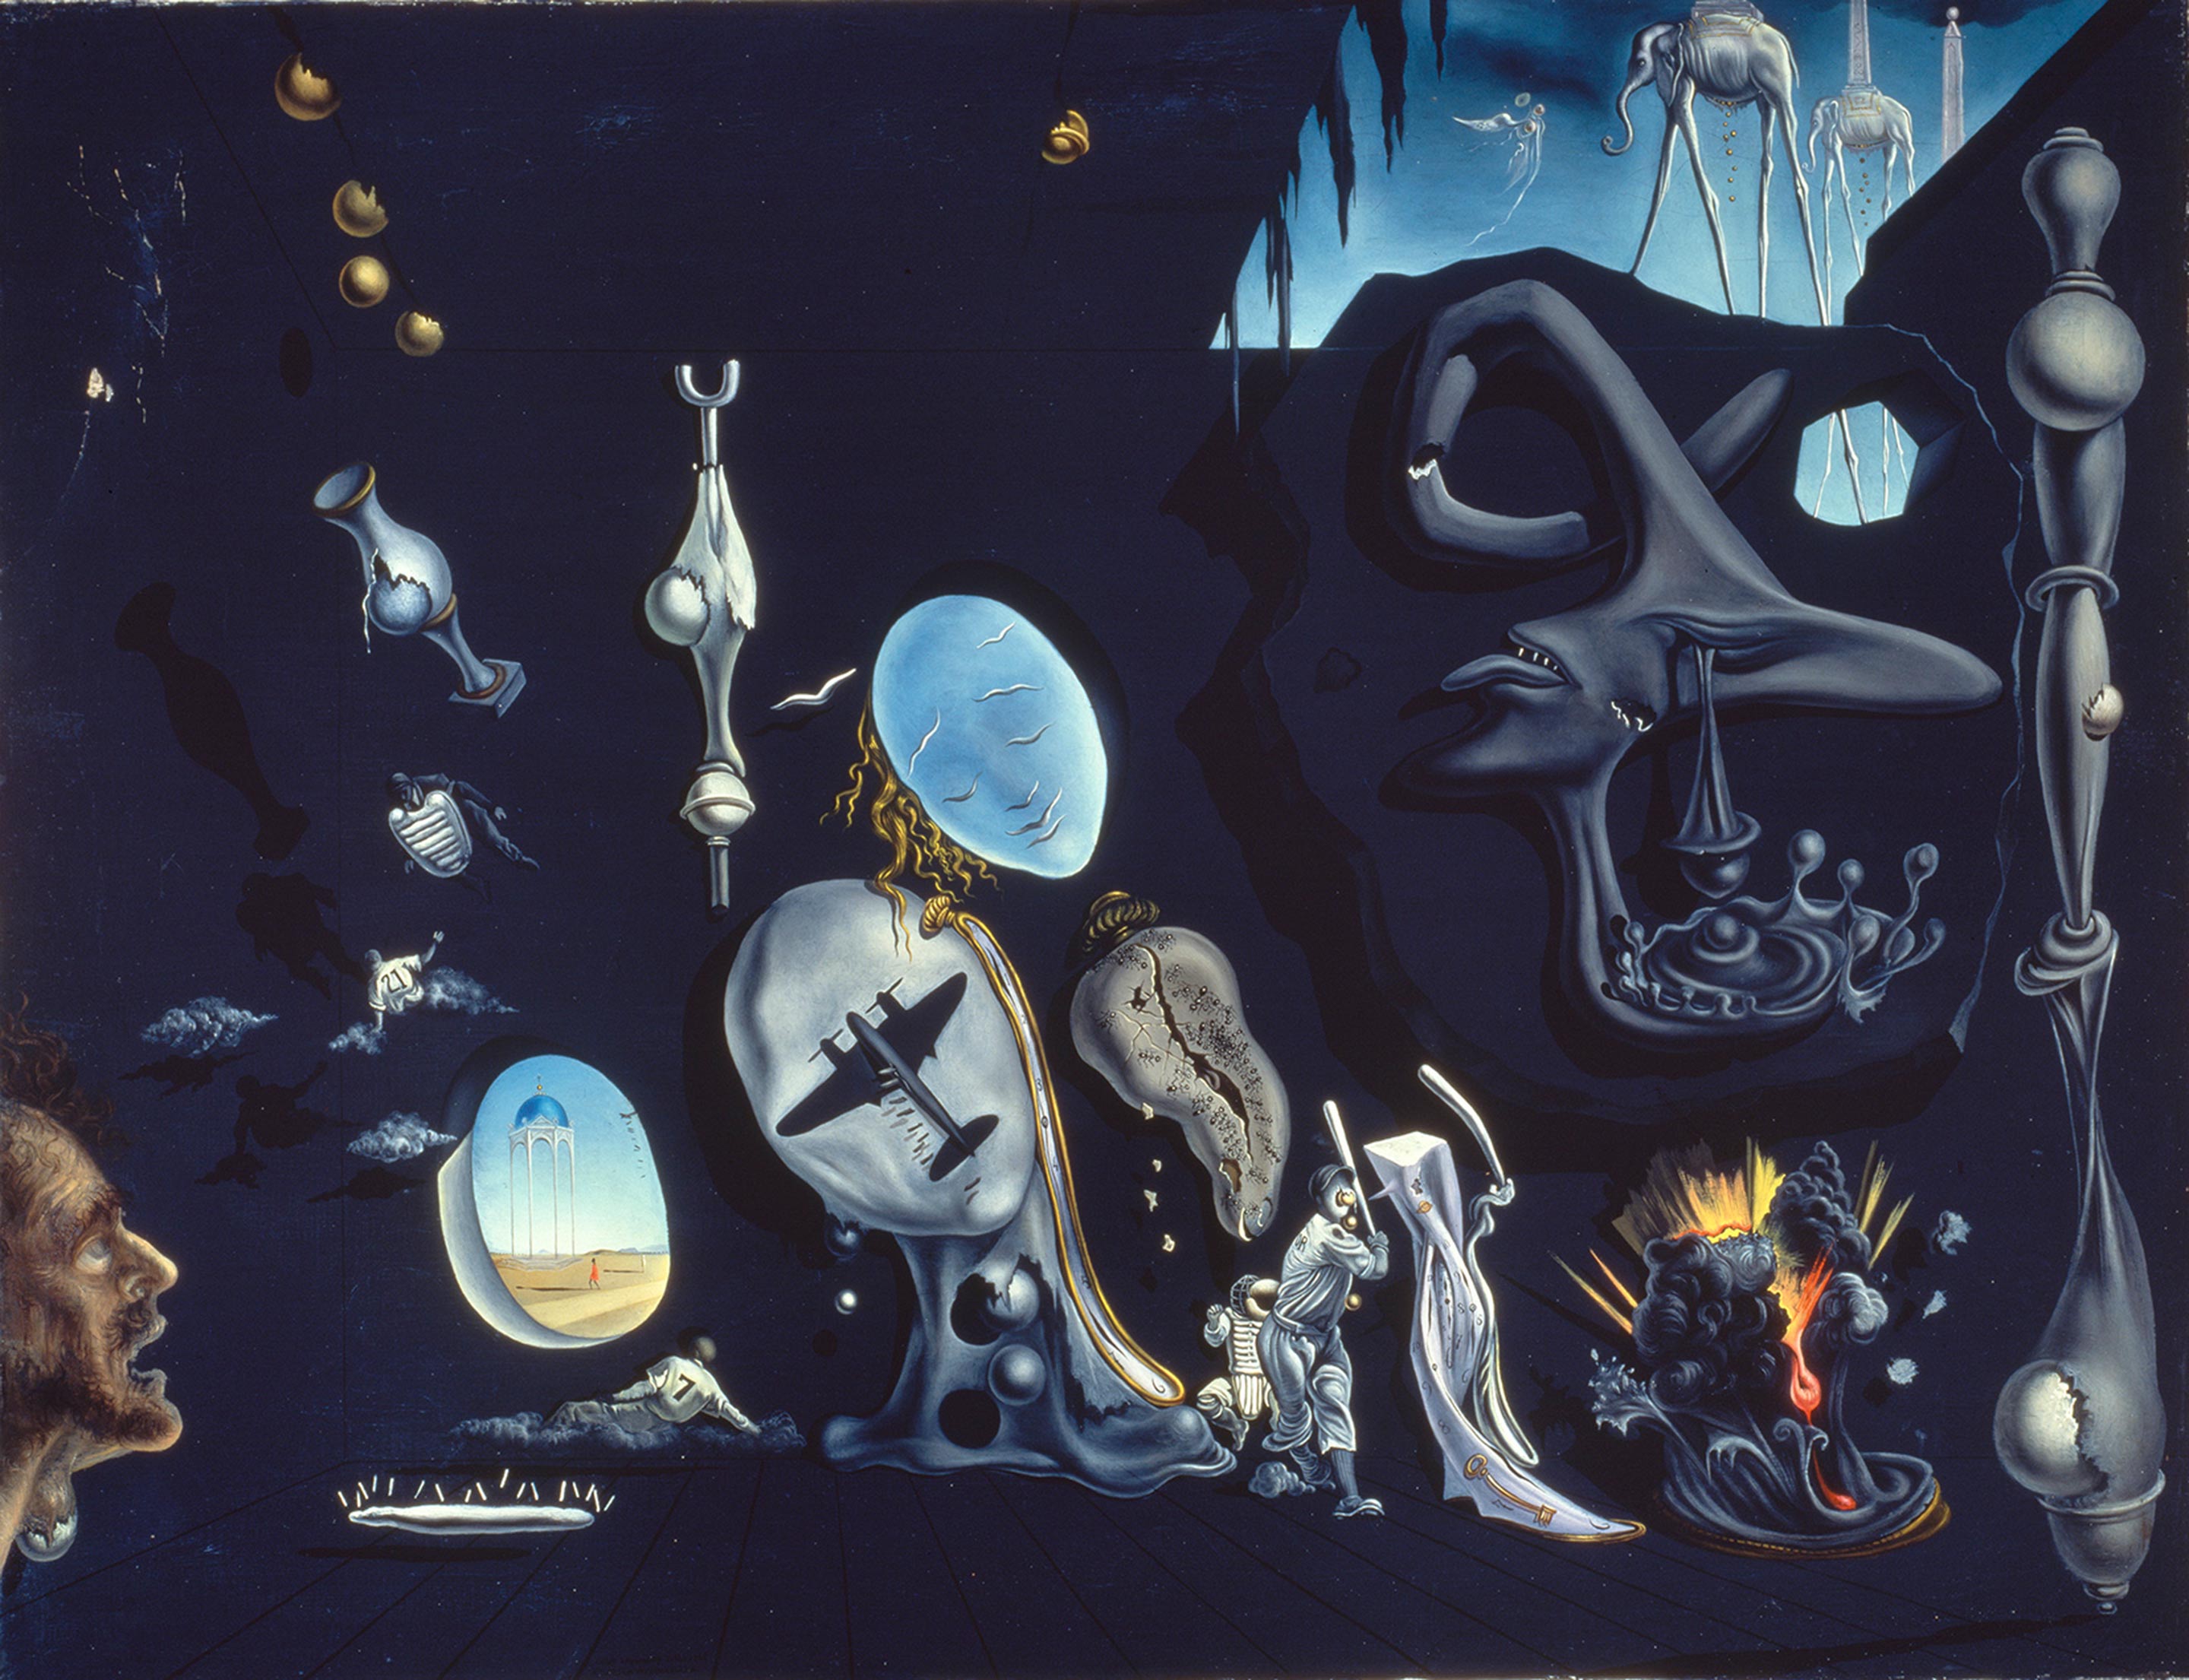 サルバドール・ダリ 《ウラニウムと原子による憂鬱な牧歌》 1945年、66.5×86.5cm、カンヴァスに油彩、国立ソフィア王妃芸術センター蔵 Collection of the Museo Nacional Centro de Arte Reina Sofía, Madrid © Salvador Dalí, Fundació Gala-Salvador Dalí, JASPAR, Japan, 2016.